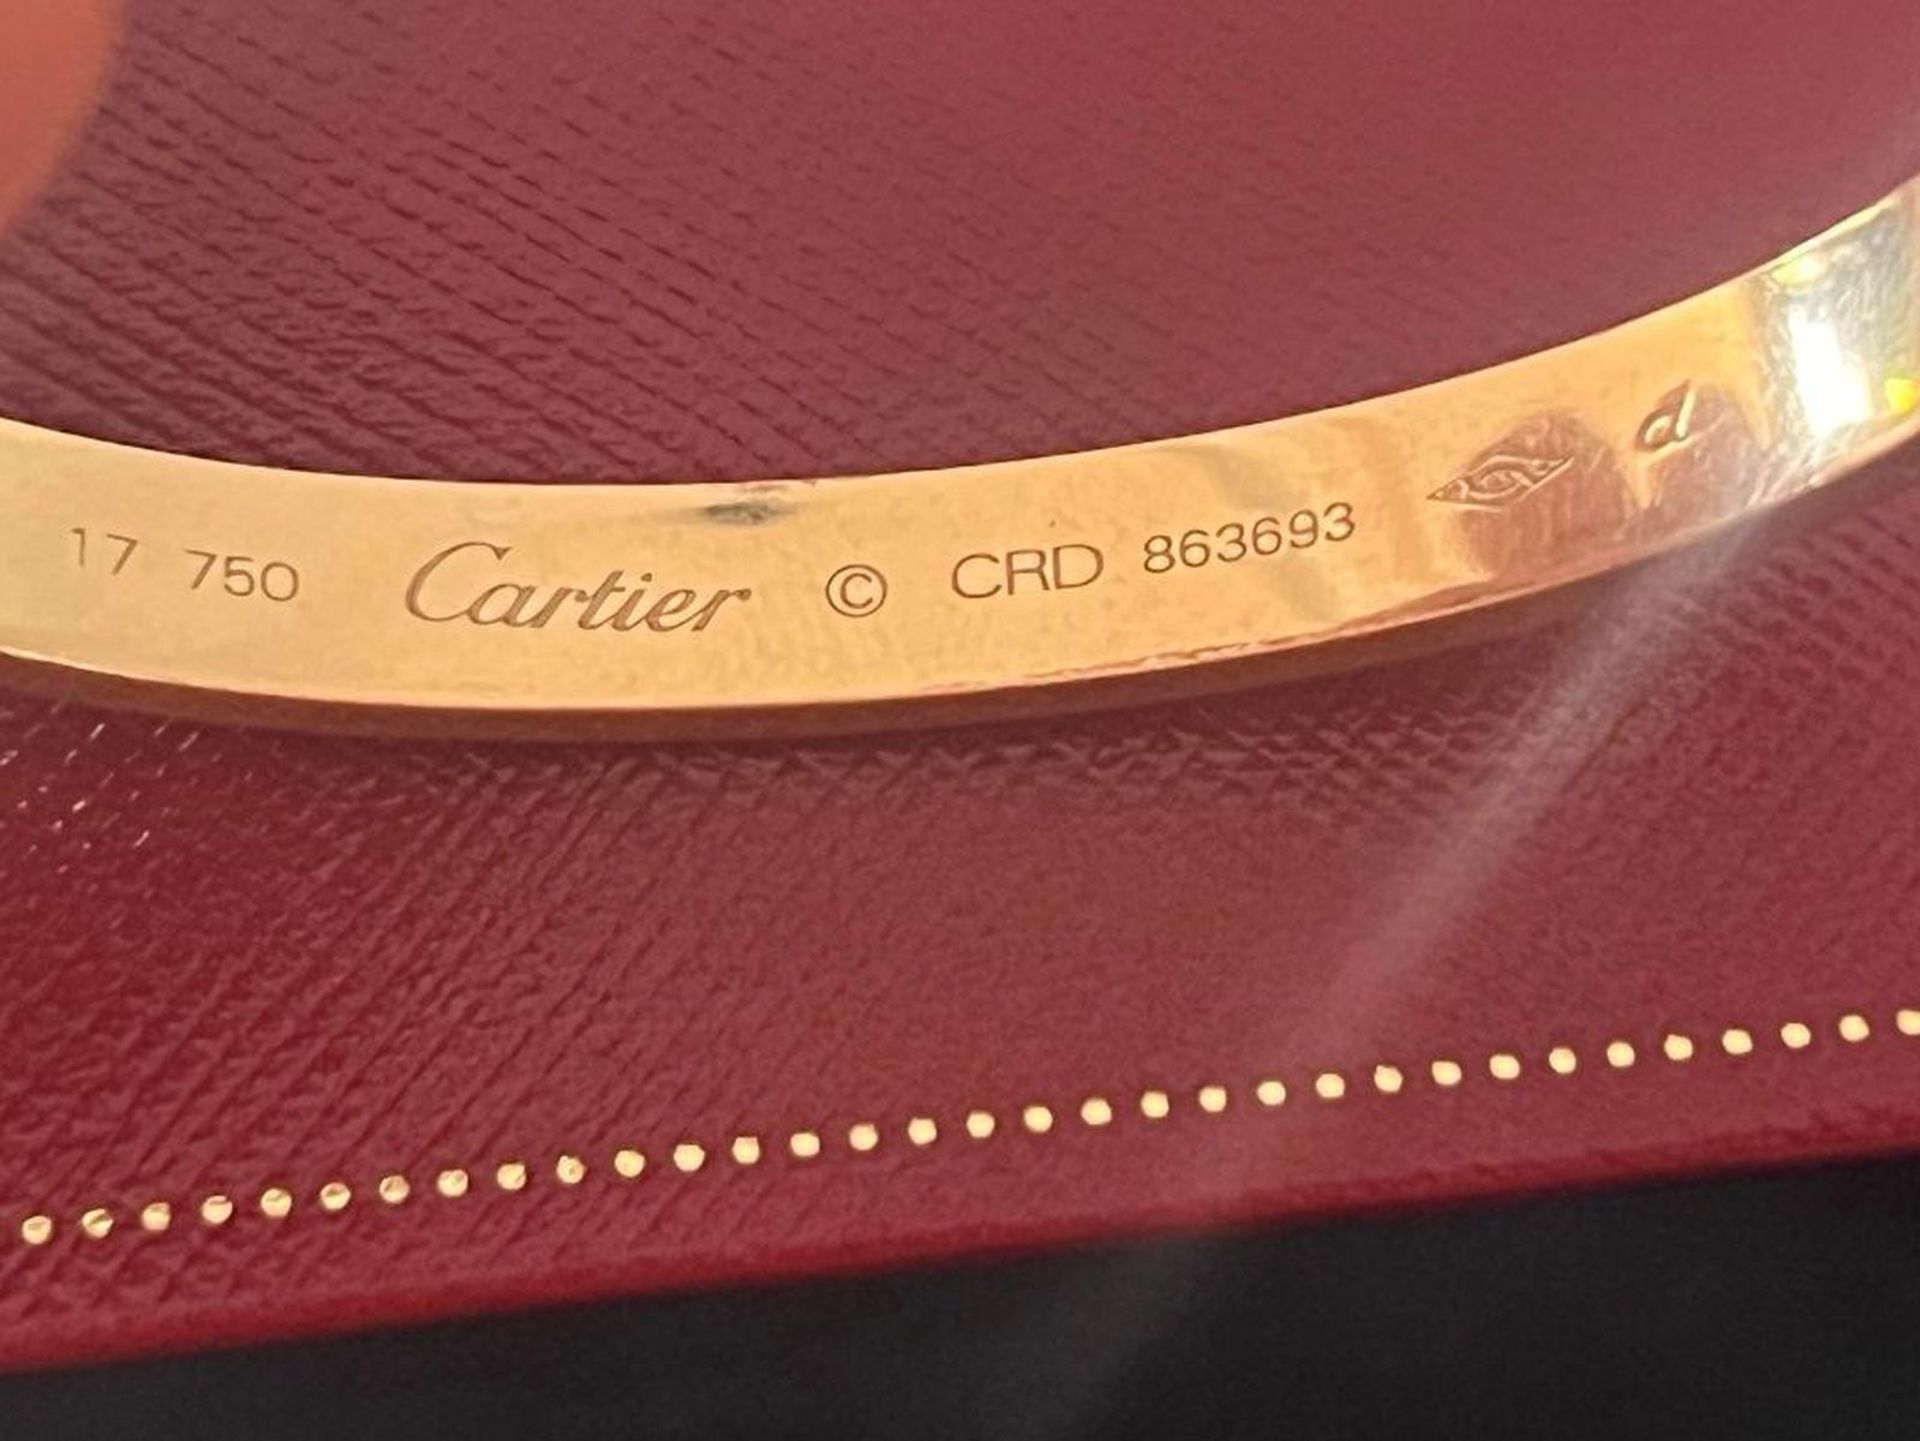 18K Rose Gold Cartier LOVE Bracelet (2016) - Image 6 of 6